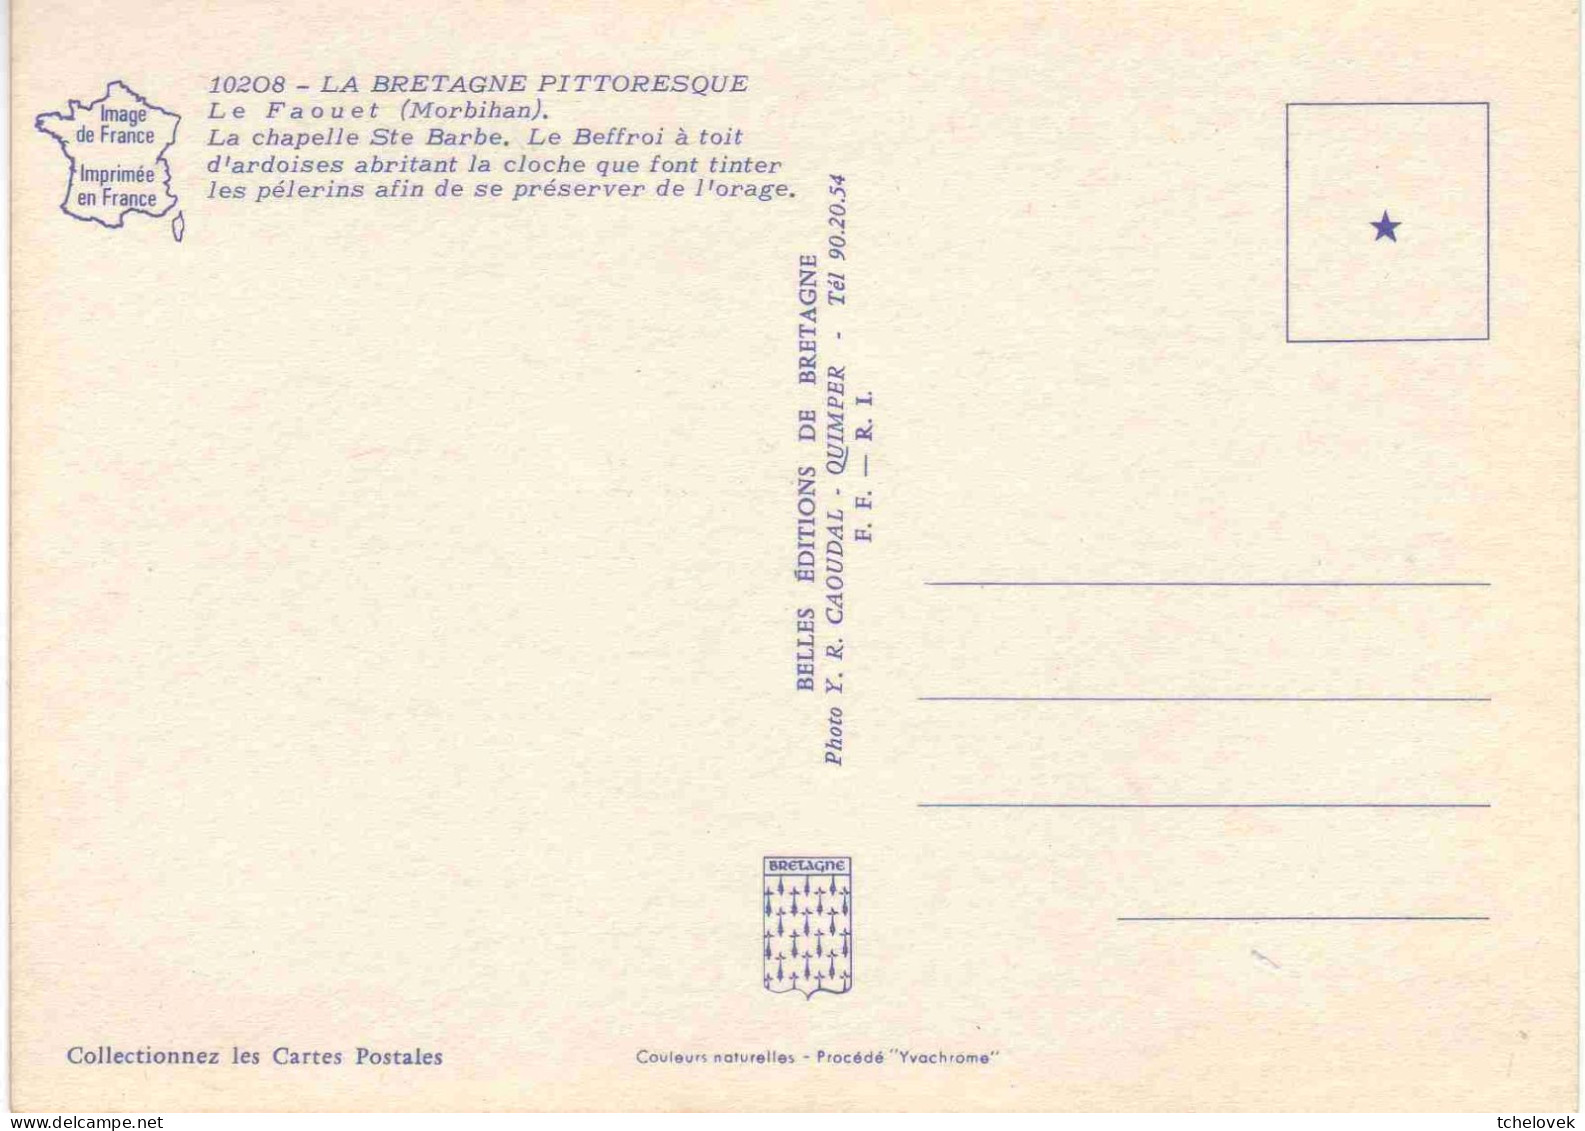 (56). Le Faouet. 4 Cp. 10 208 Chapelle Ste Barbe & CIM 3.00.01.009 Chapelle St Fiacre & MX 7635 & 10 210 - Faouët